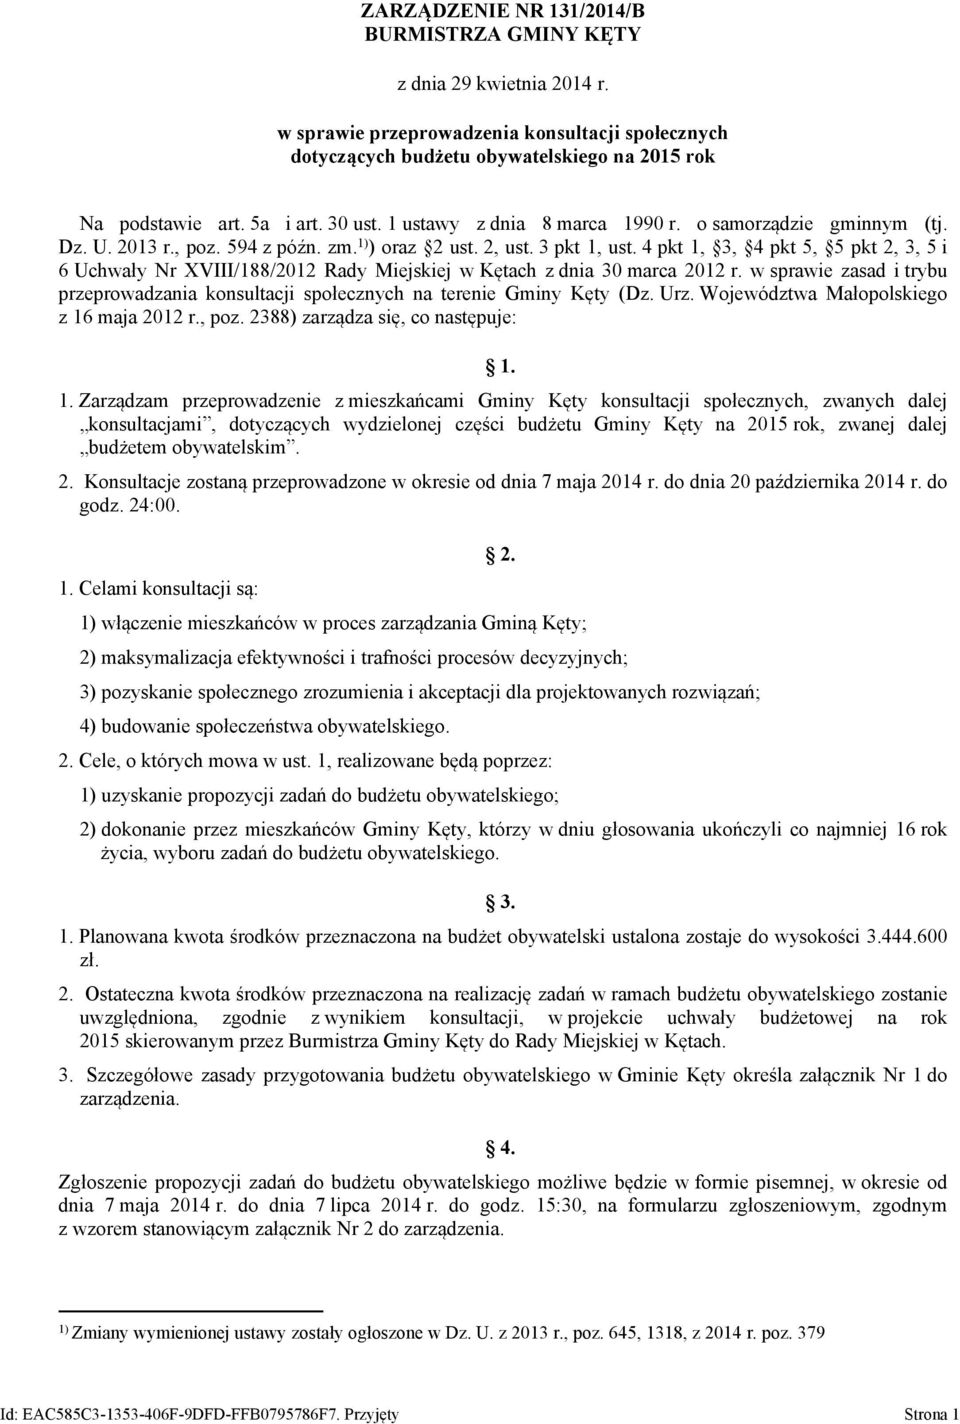 4 pkt 1, 3, 4 pkt 5, 5 pkt 2, 3, 5 i 6 Uchwały Nr XVIII/188/2012 Rady Miejskiej w Kętach z dnia 30 marca 2012 r.